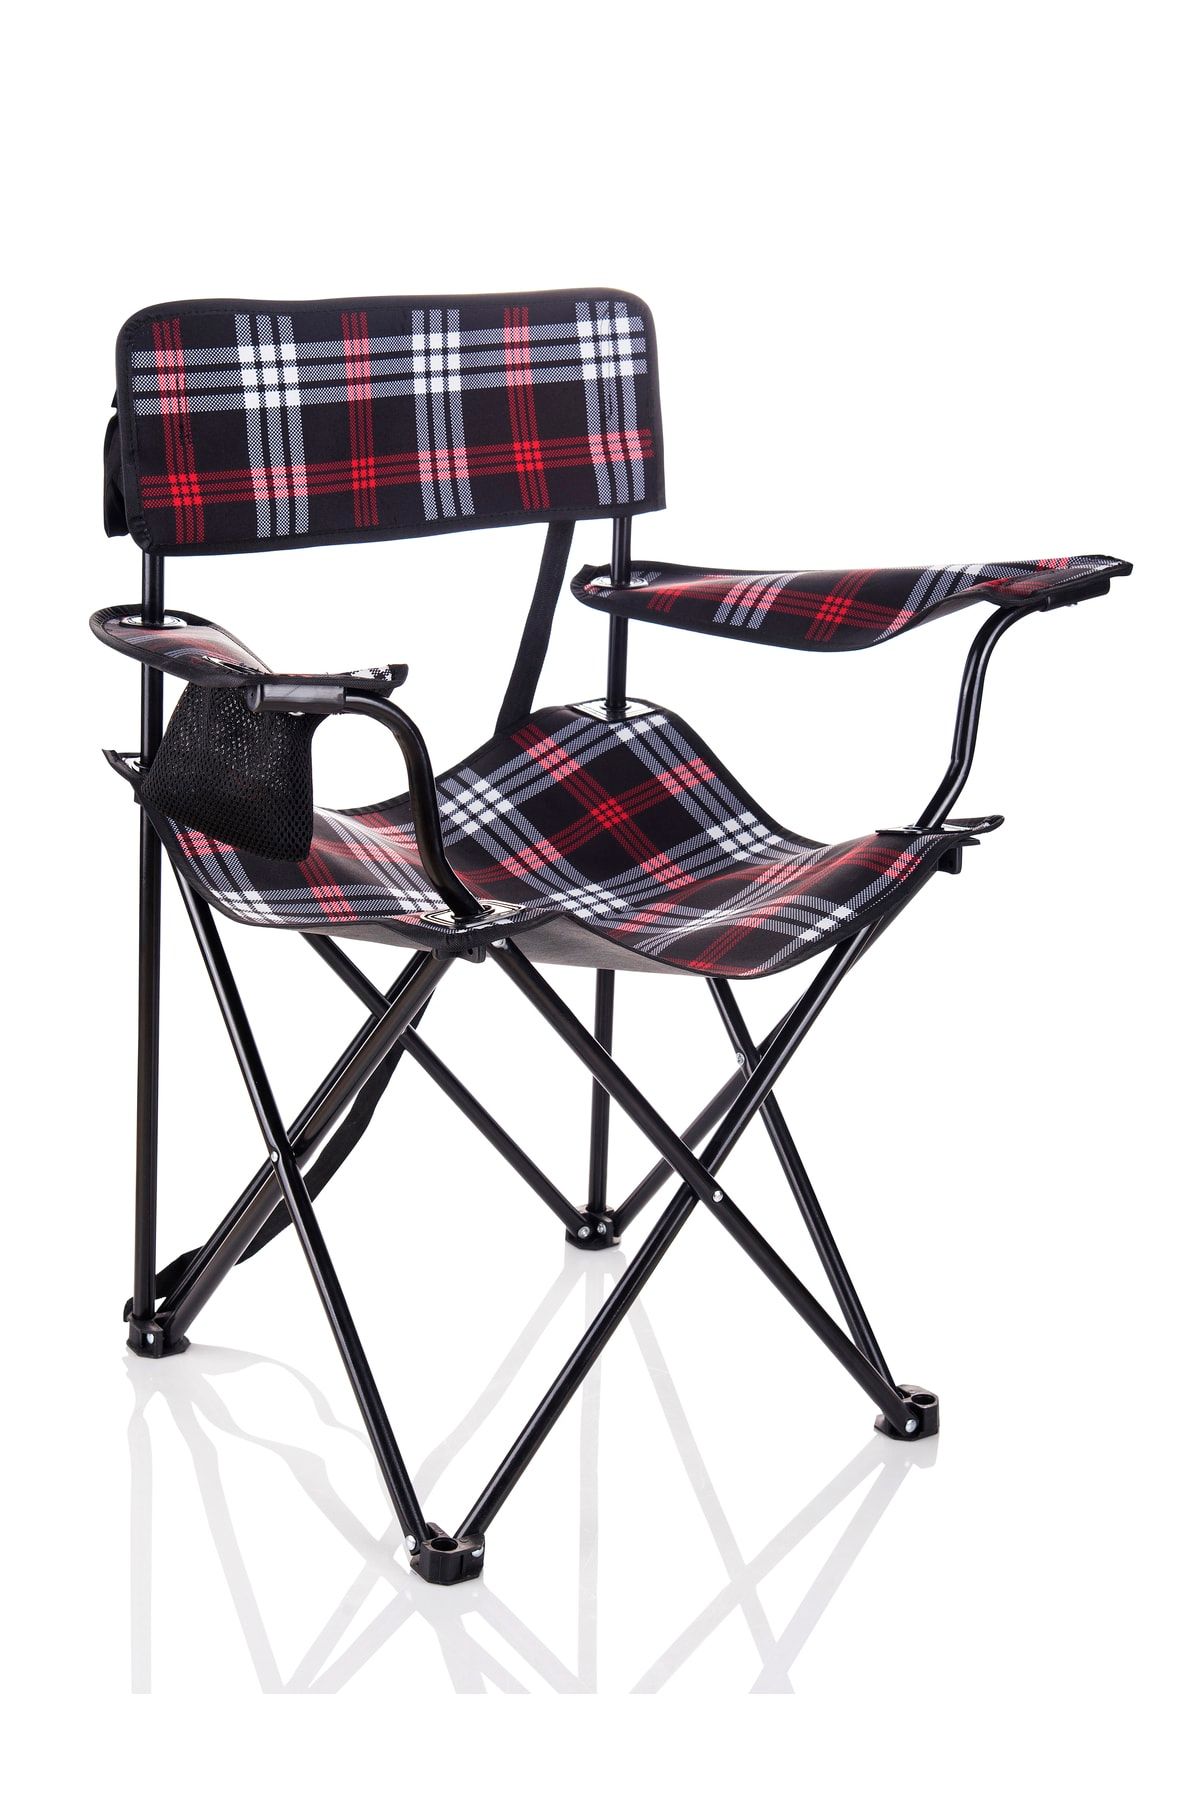 Miras Ekose Pro Kamp Sandalyesi , Siyah-kırmızı (2 YIL GARANTİ)